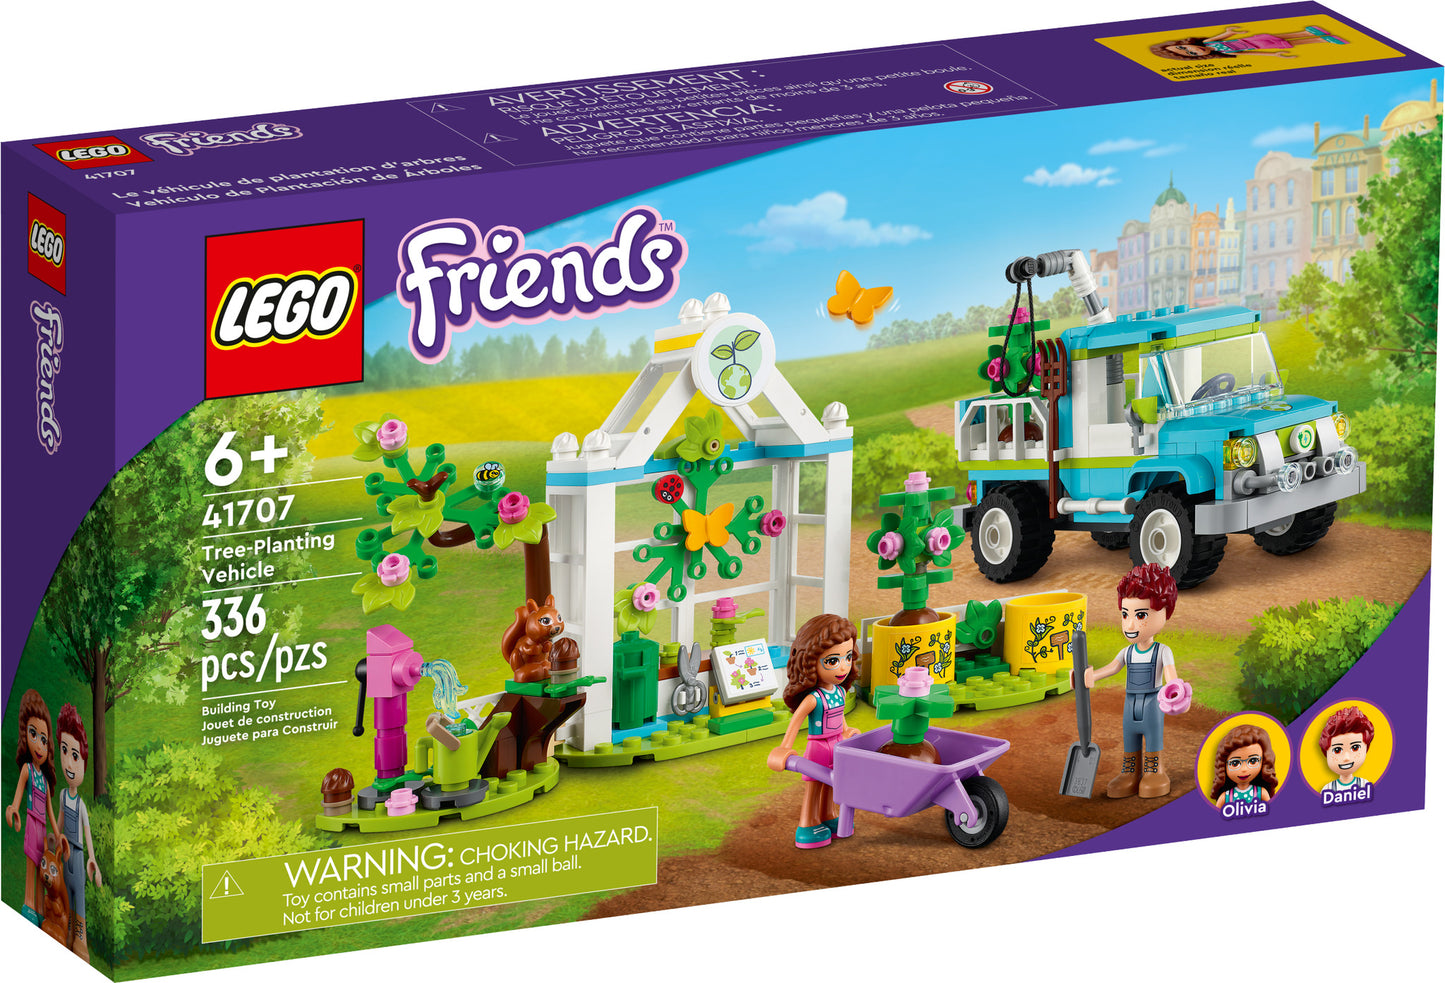 41707 LEGO Friends - Veicolo Pianta Alberi